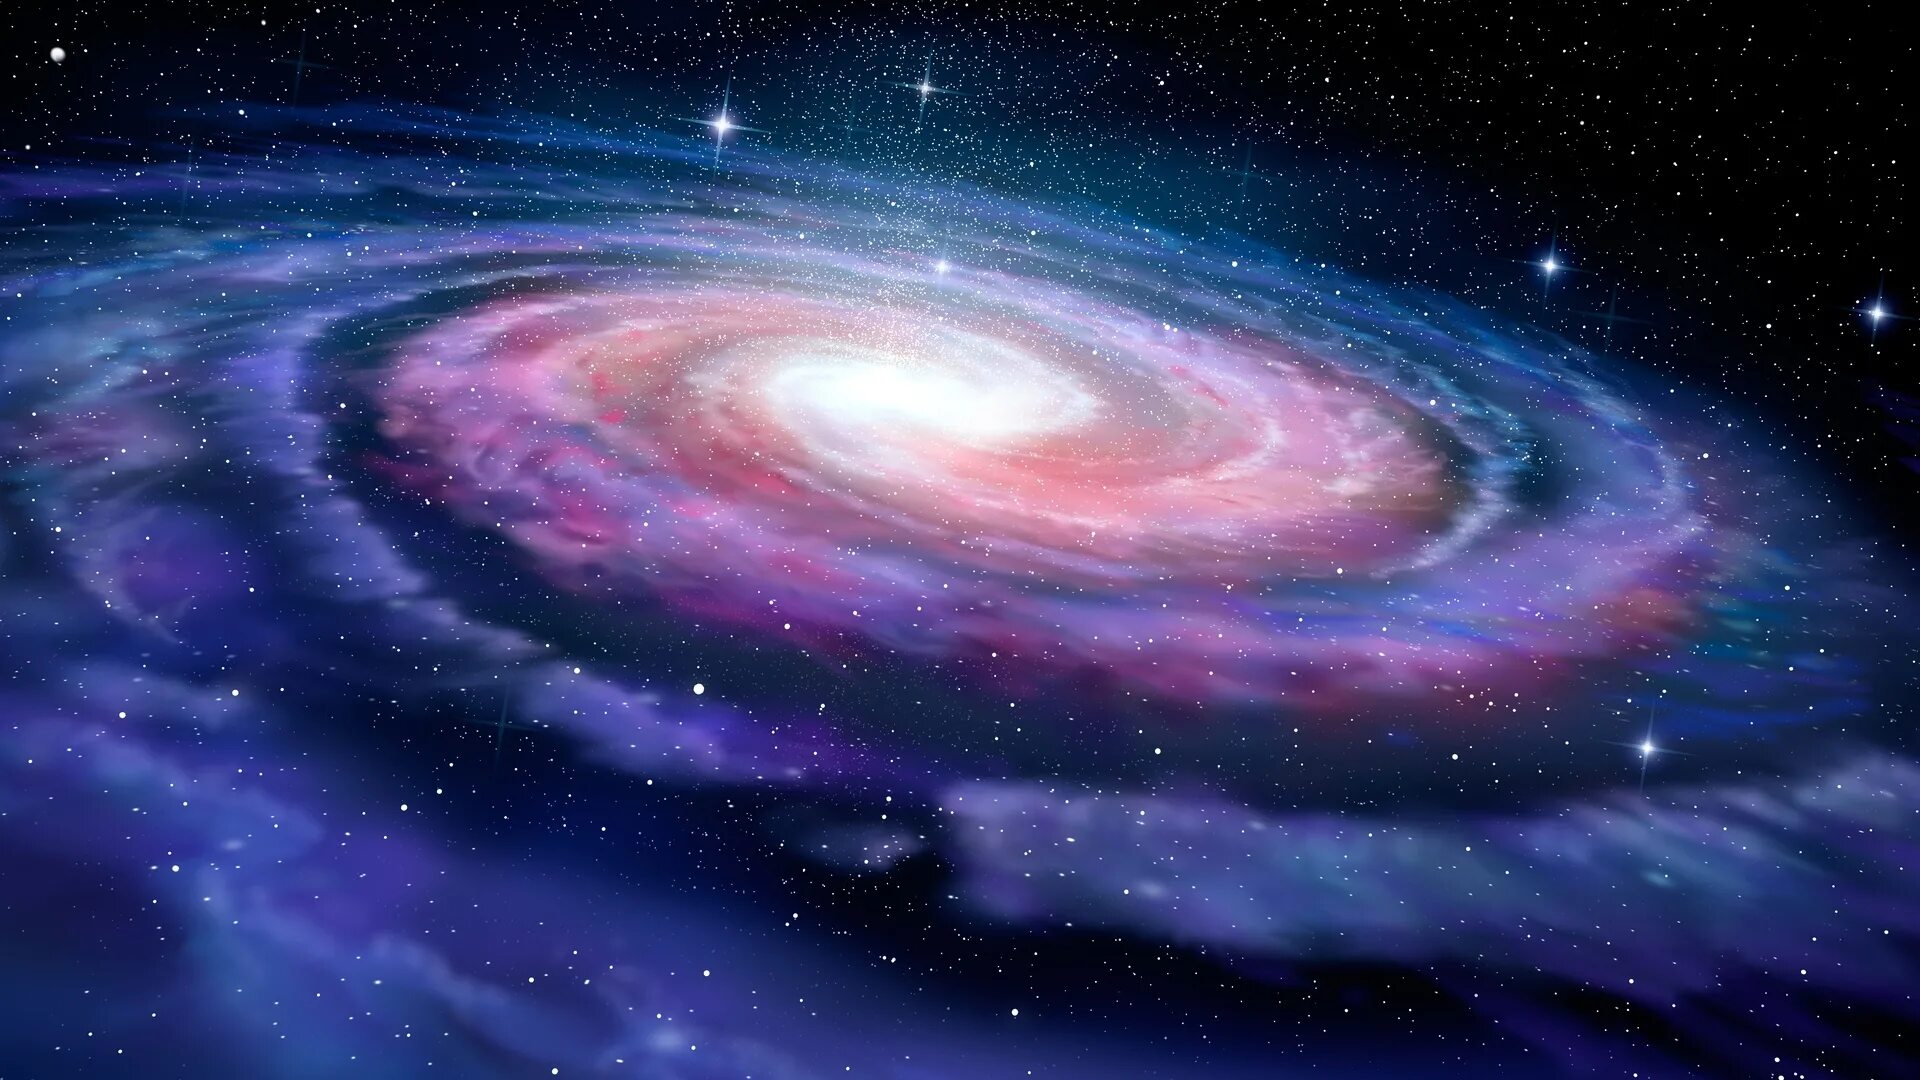 Наша галактика называется млечный путь. Наша Галактика Млечный путь. Галактика в галактике Млечный путь. Чумацький шлях наша Галактика. Галактика Млечный пуст.